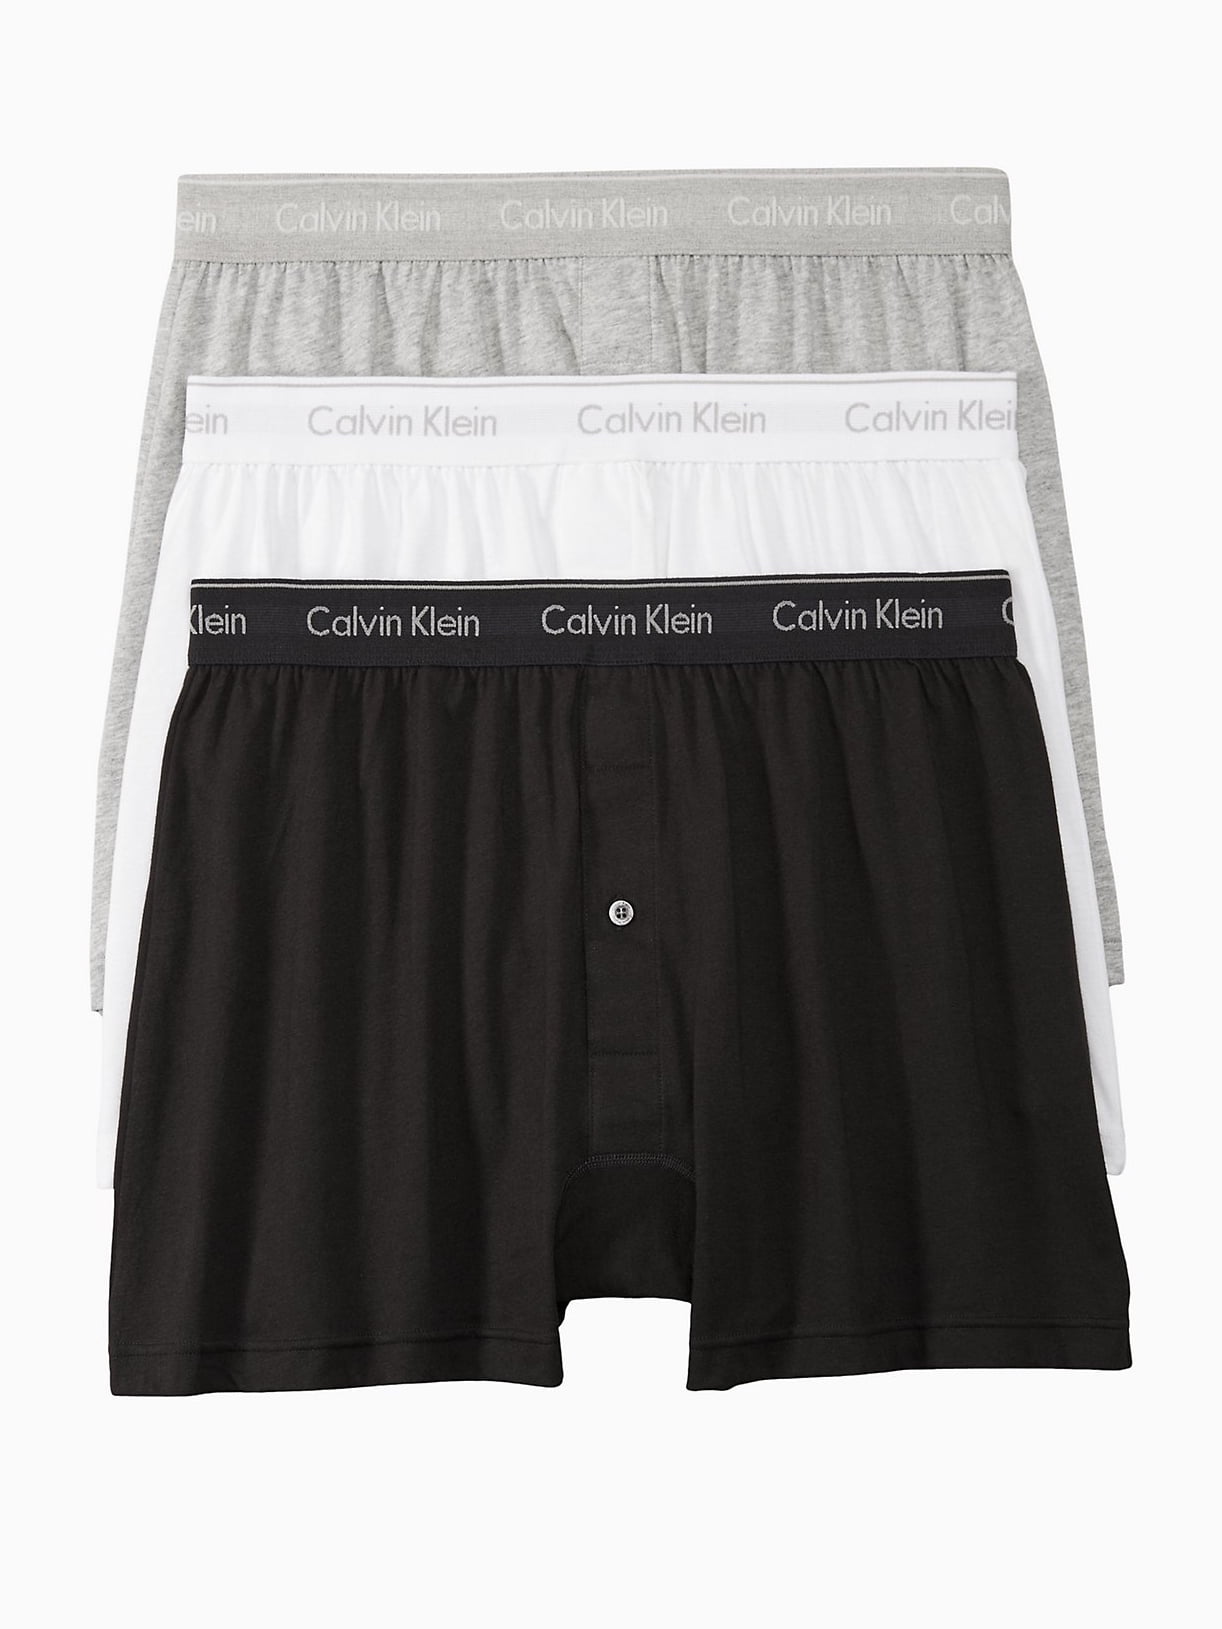 Cotton Classics 3-Pack Knit Boxer